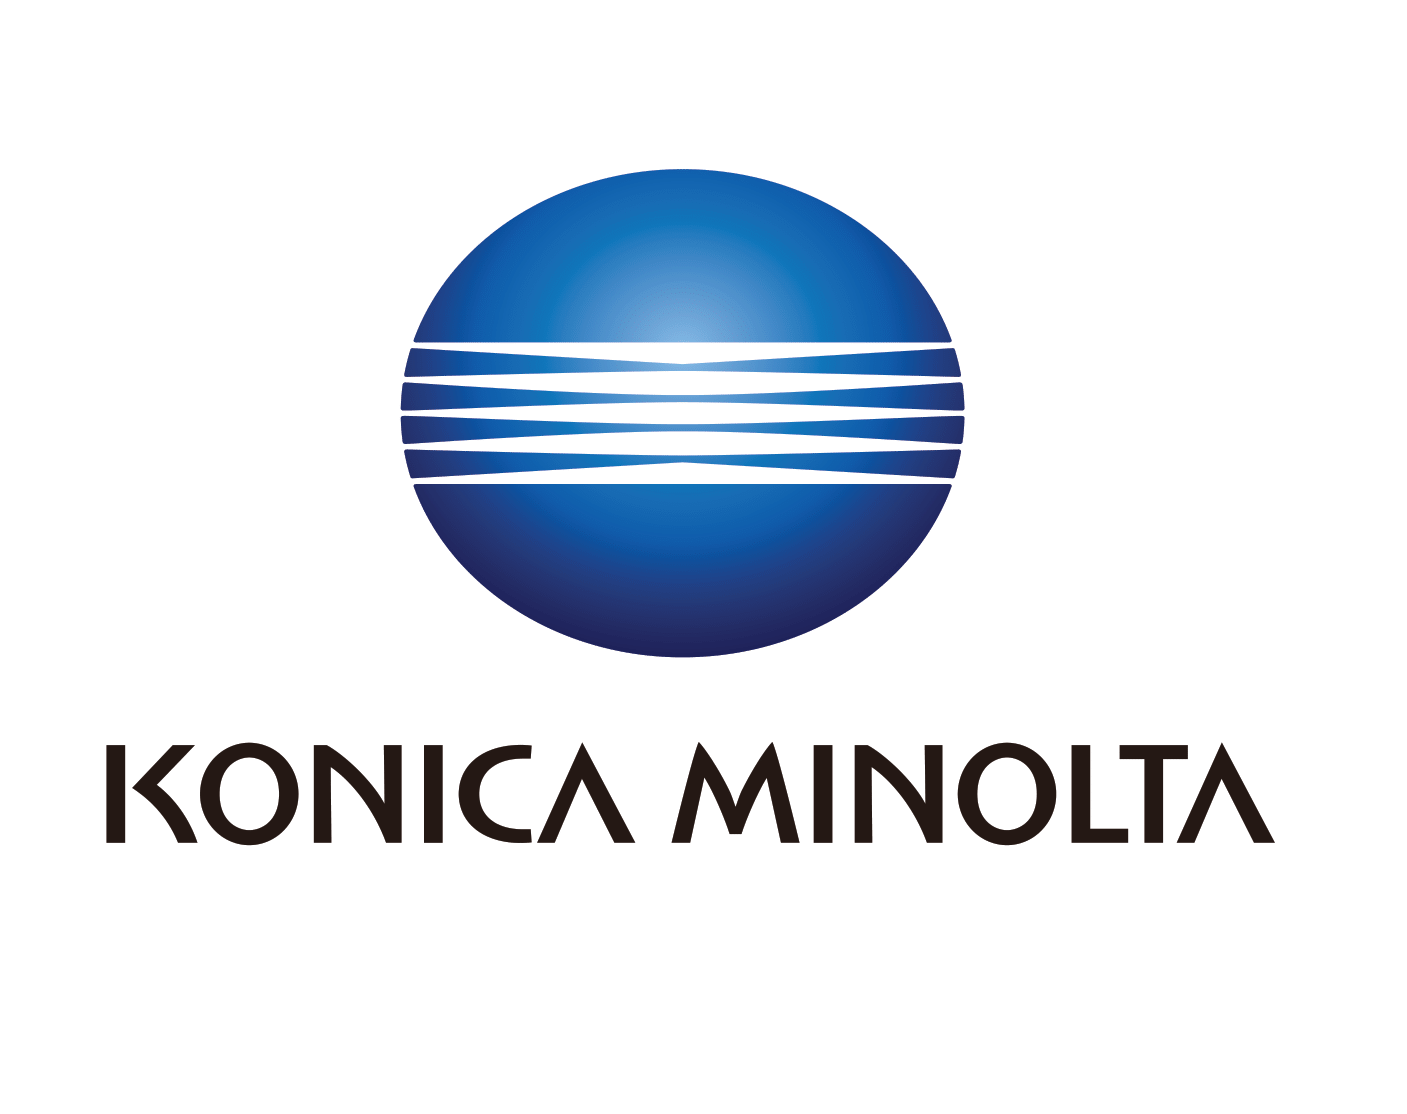 Konica Minolta Business Solutions Vietnam Co., Ltd